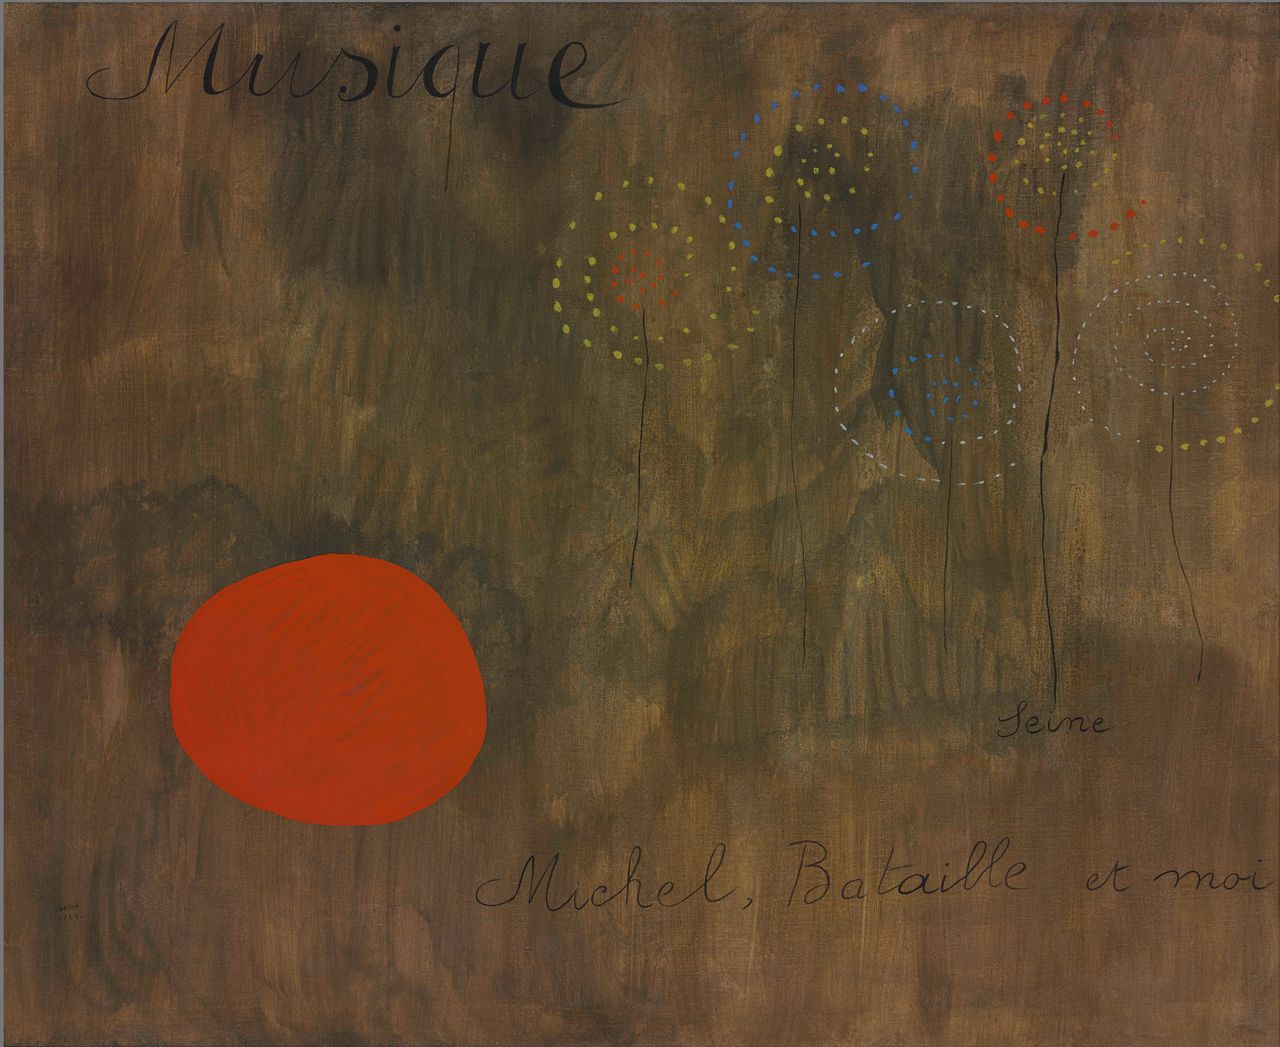 Het schilderij ‘Peinture-poème (Musique, Seine, Michel, Bataille et moi)’ uit 1927 van de Spaanse schilder Joan Miró.